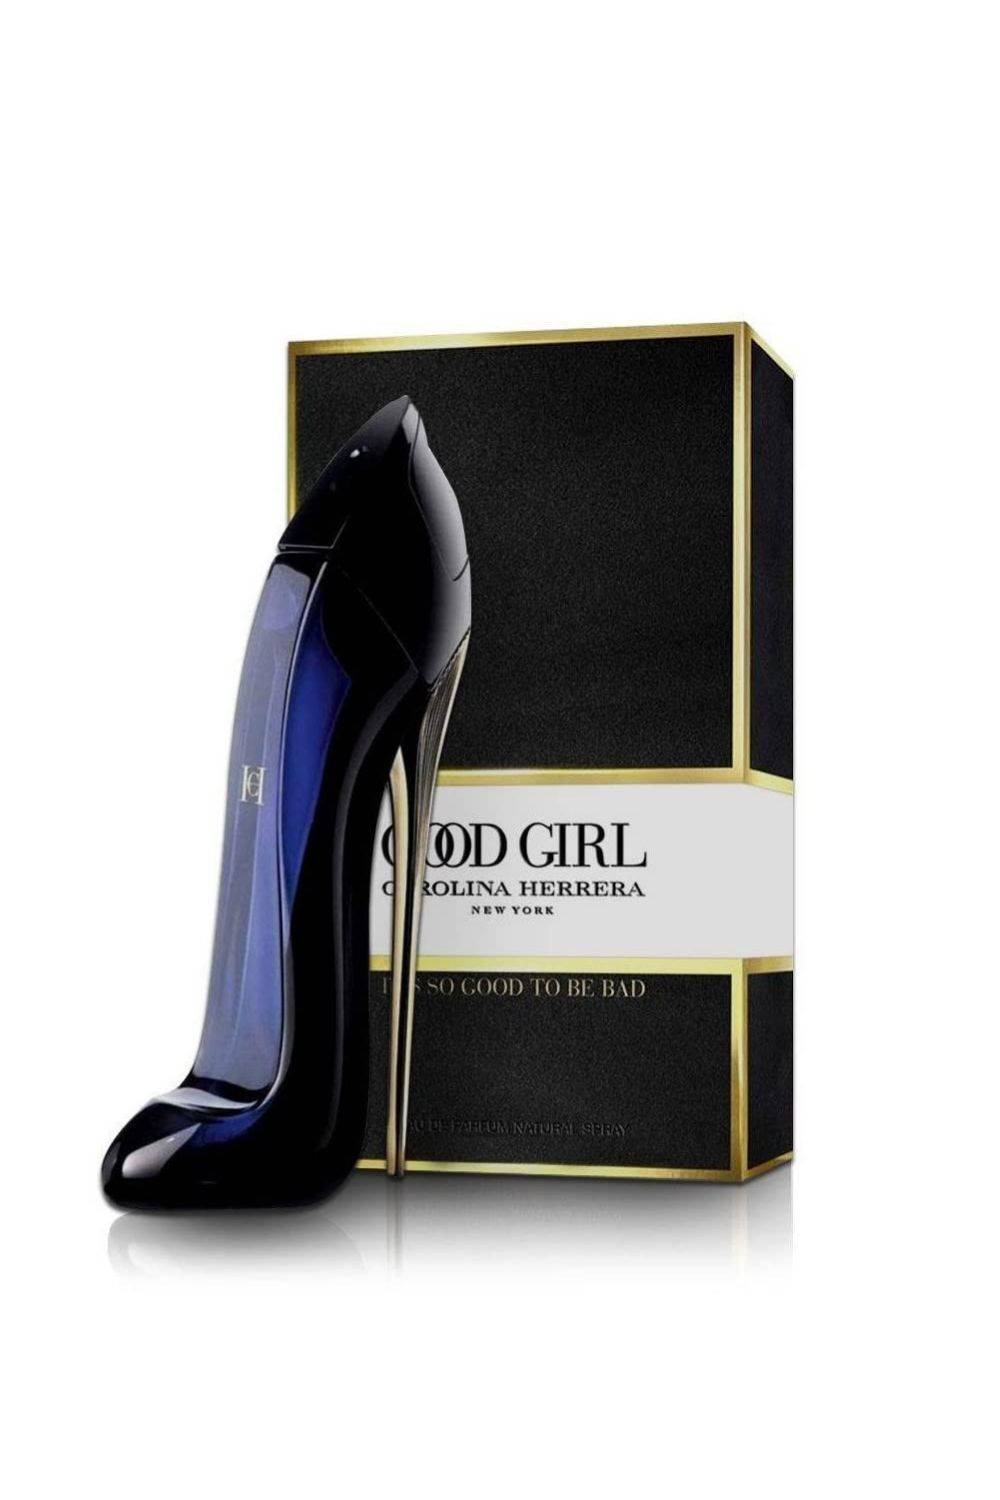 Perfumes que dejan huella: Good Girl de Carolina Herrera